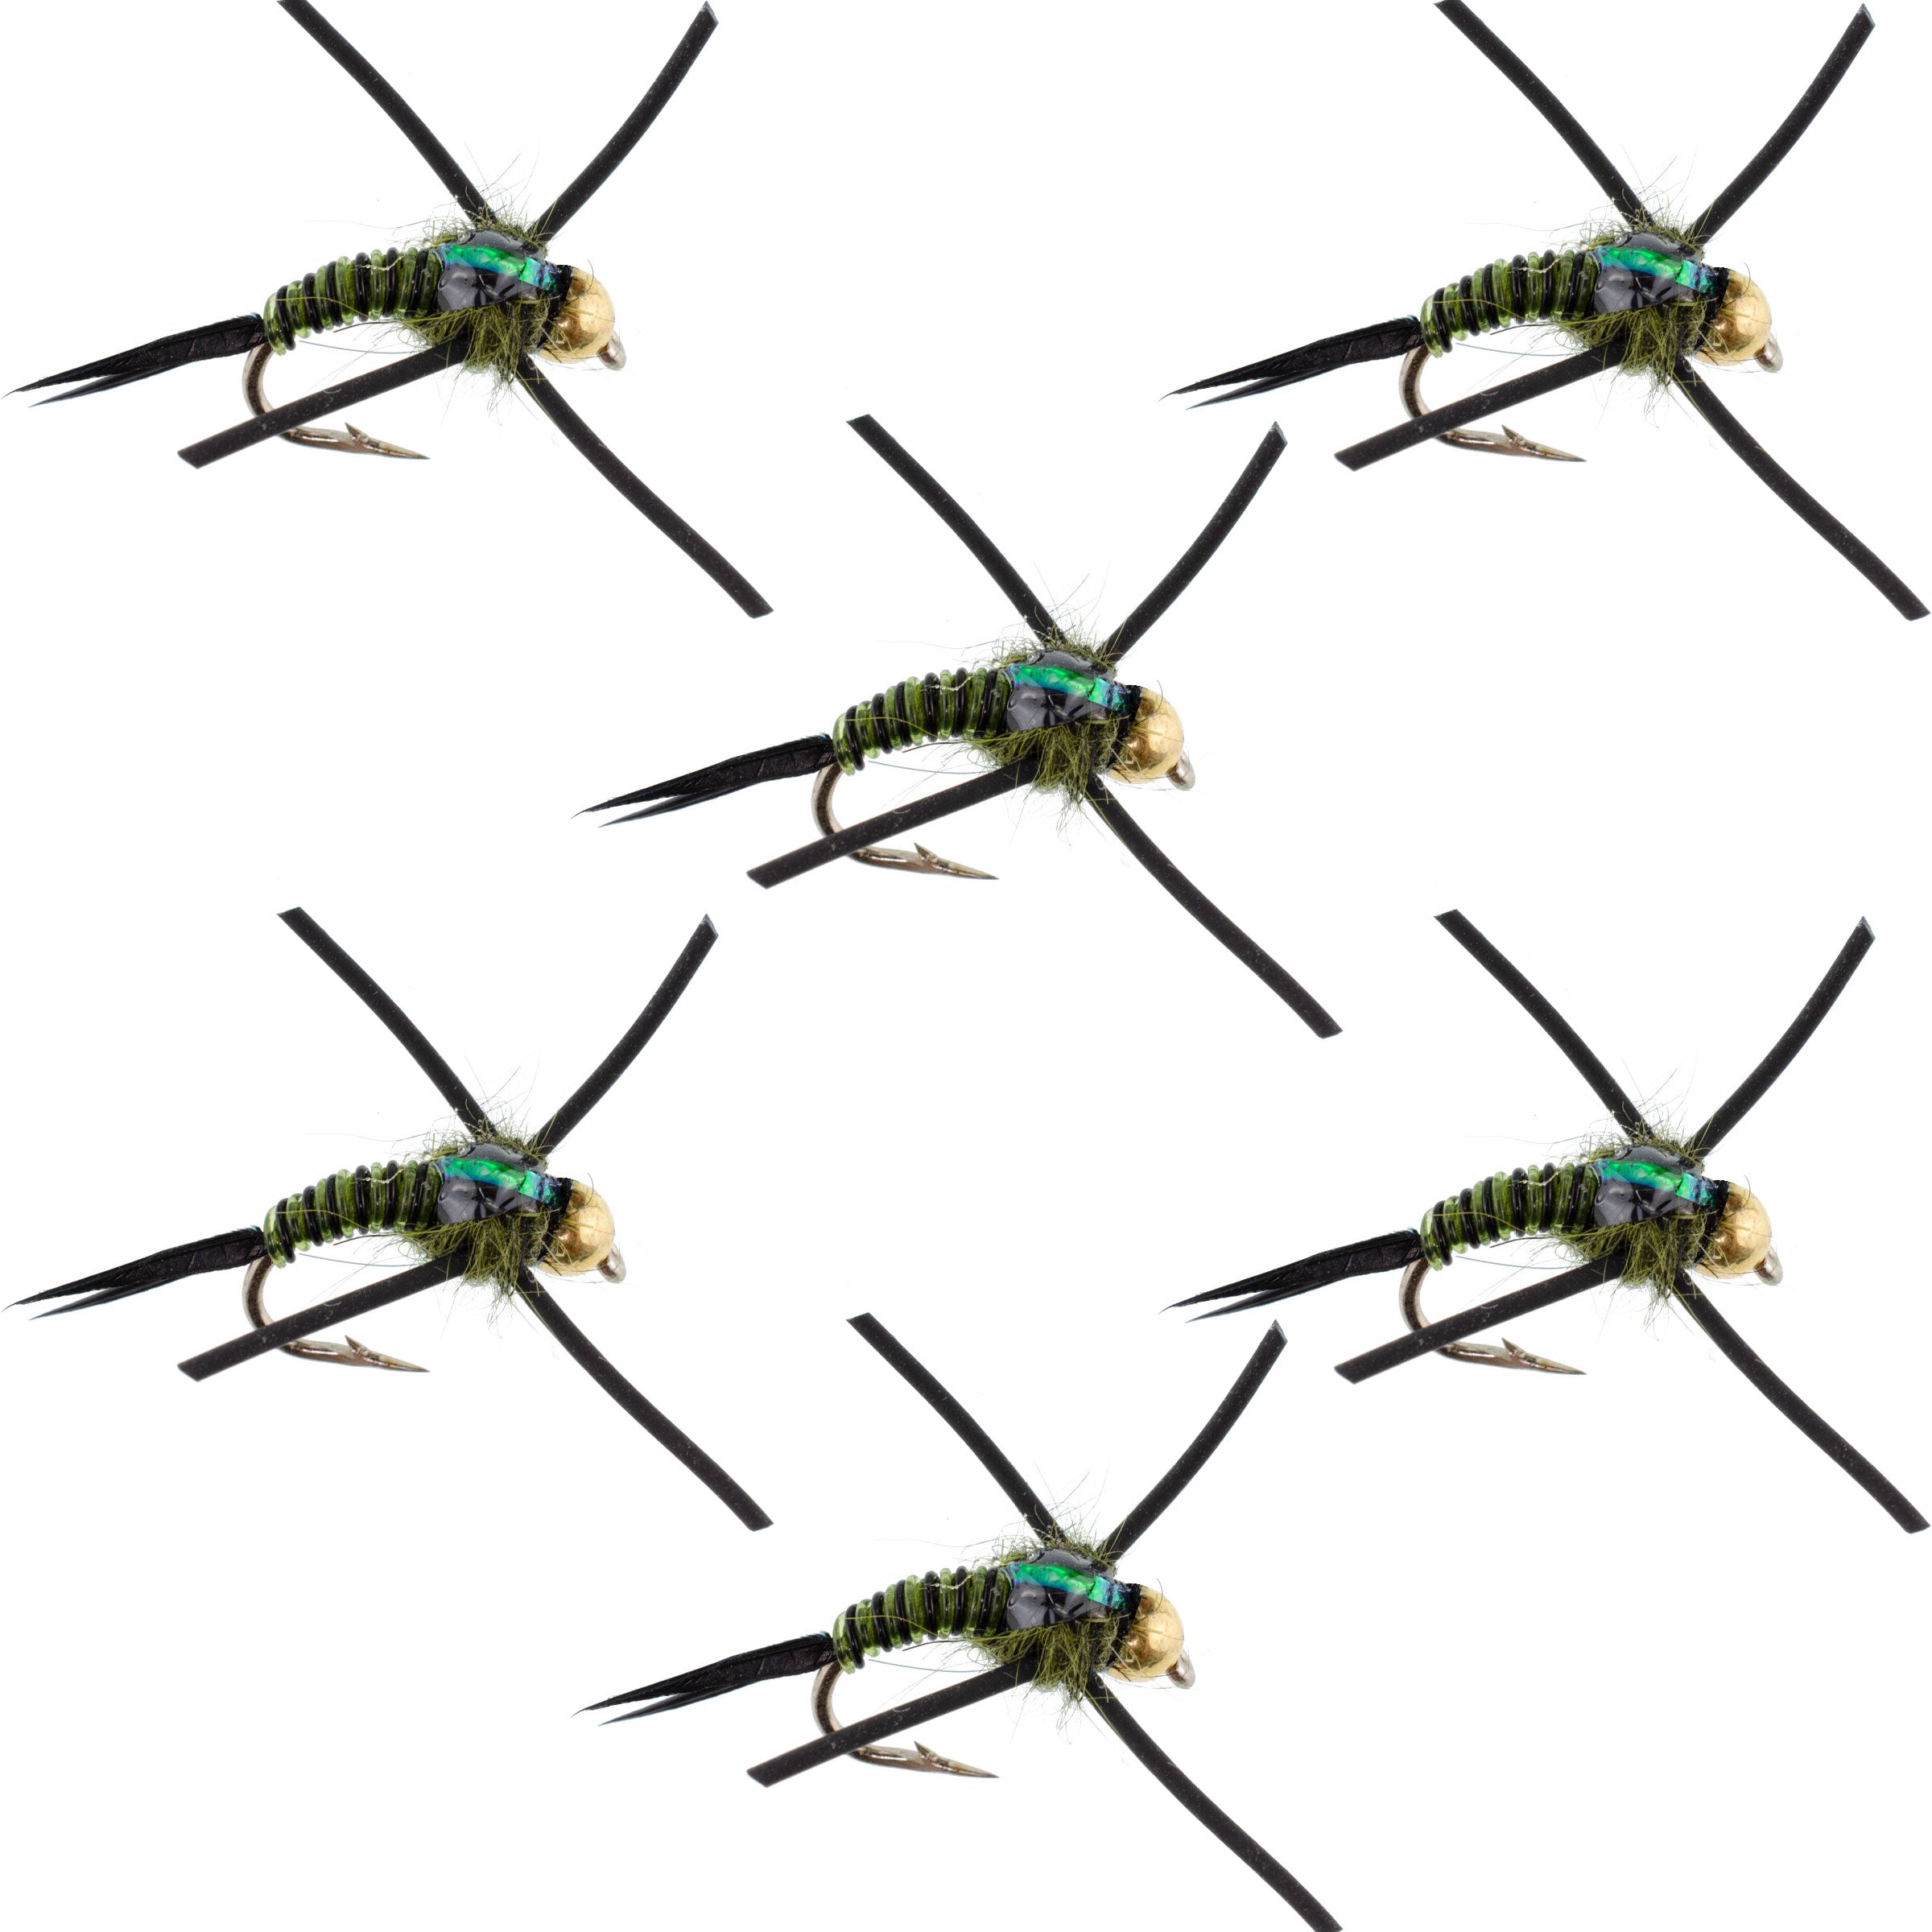 Tungsten Bead Head Rubber Legs Black Olive Zebra Copper John Nymph Fly Fishing Flies - Set of 6 Flies Hook Size 14